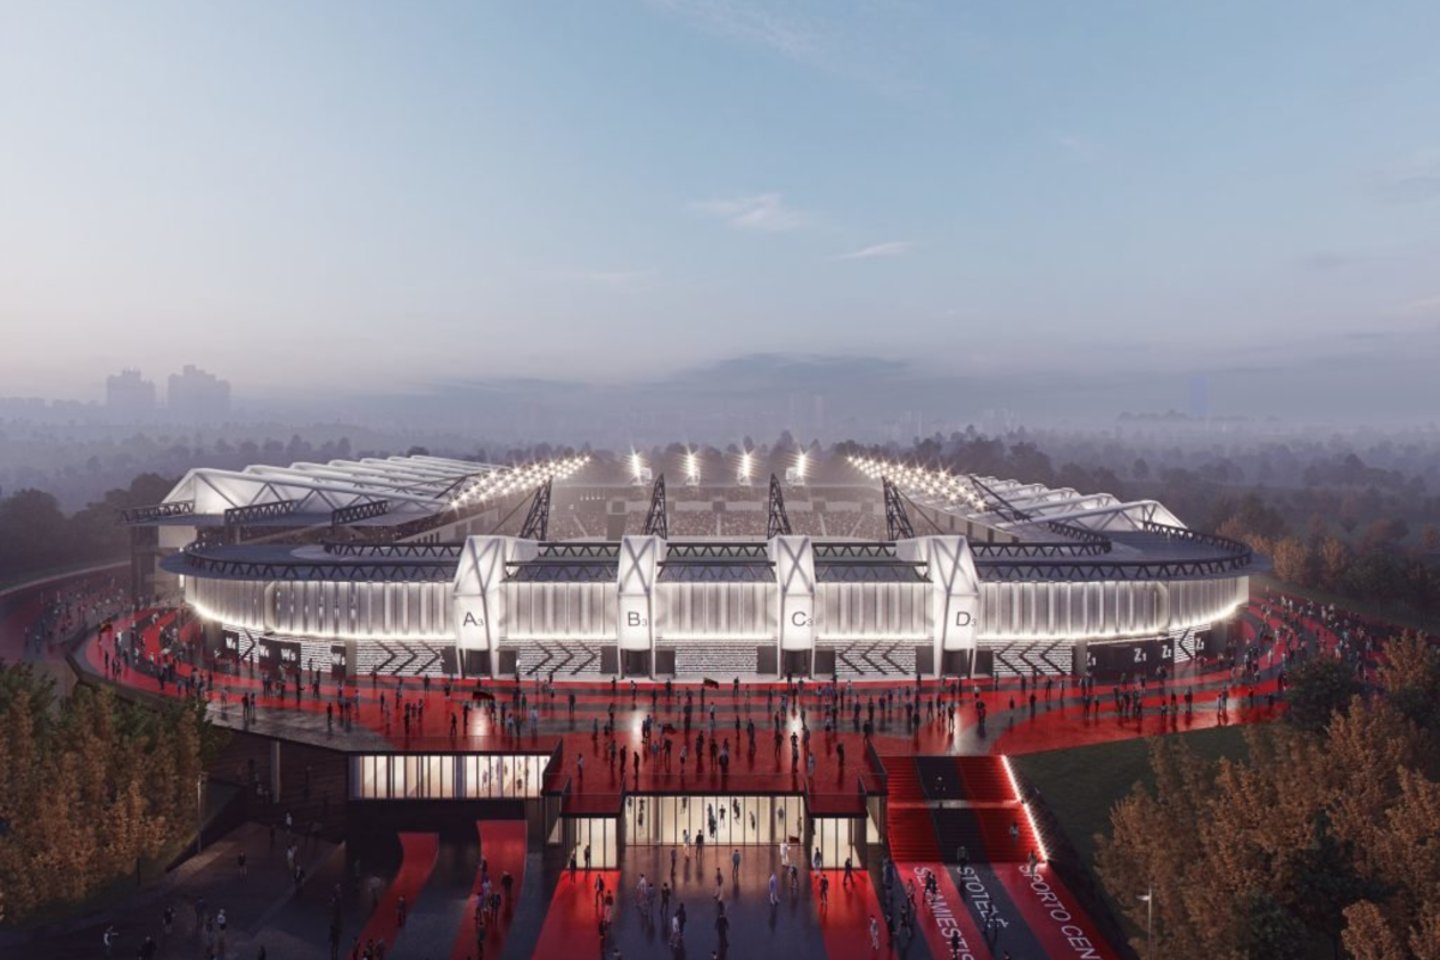 Projekto koncesininko „Axis Industries“ partneriai „Cloud architektai“ parengė naujas stadiono vizualizacijas.<br>vizual.